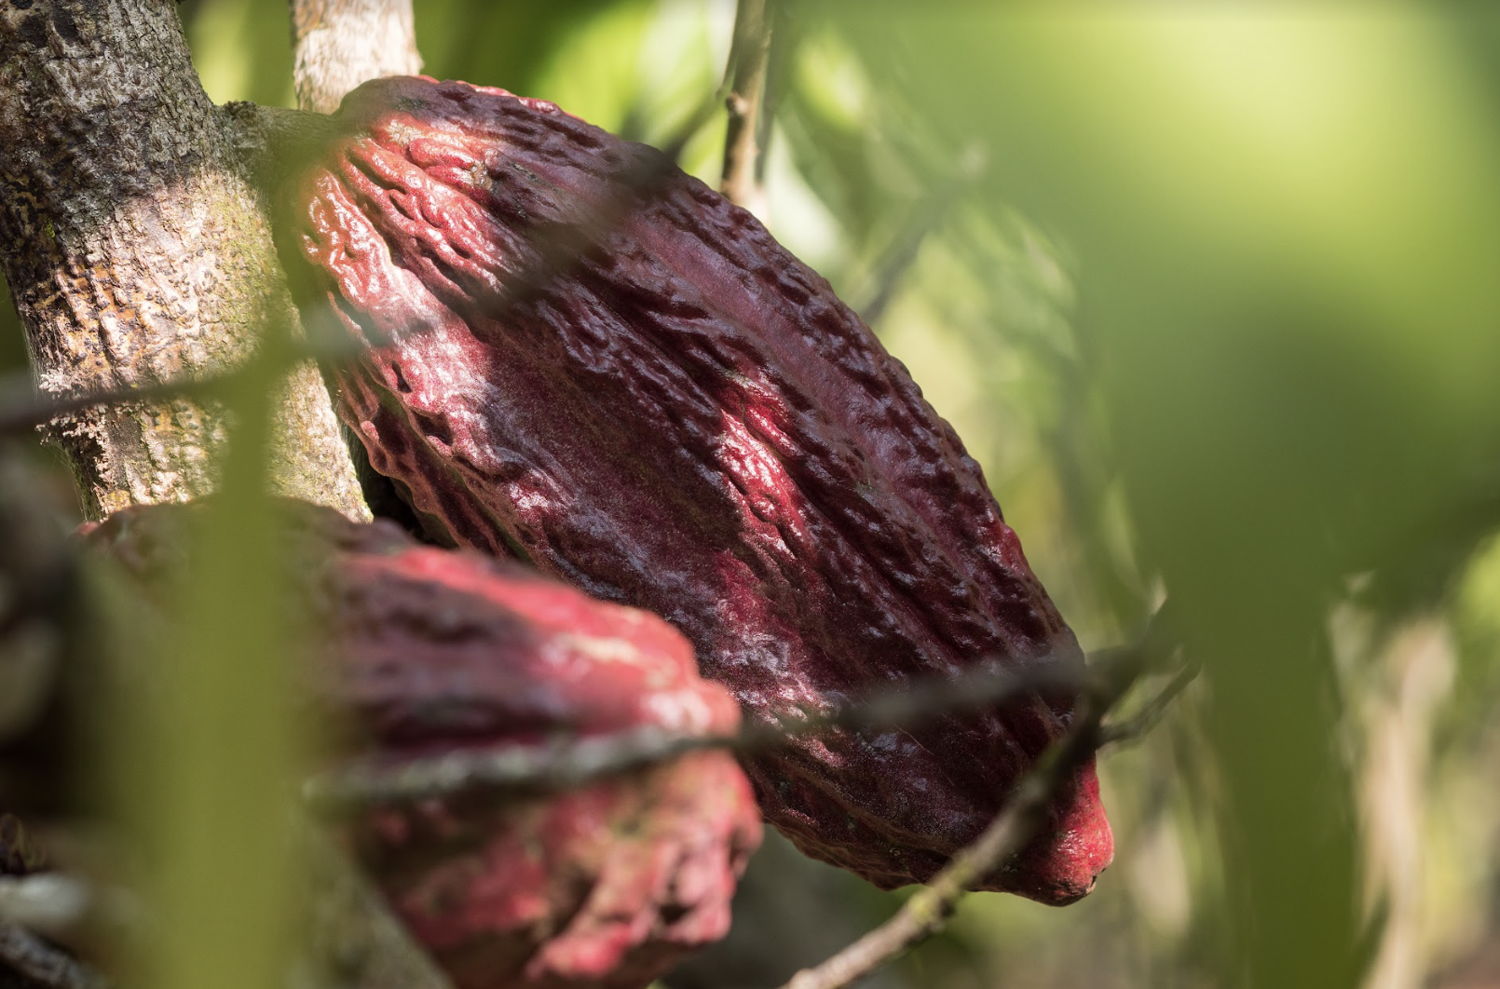 Guylian_Fairtrade cacao 